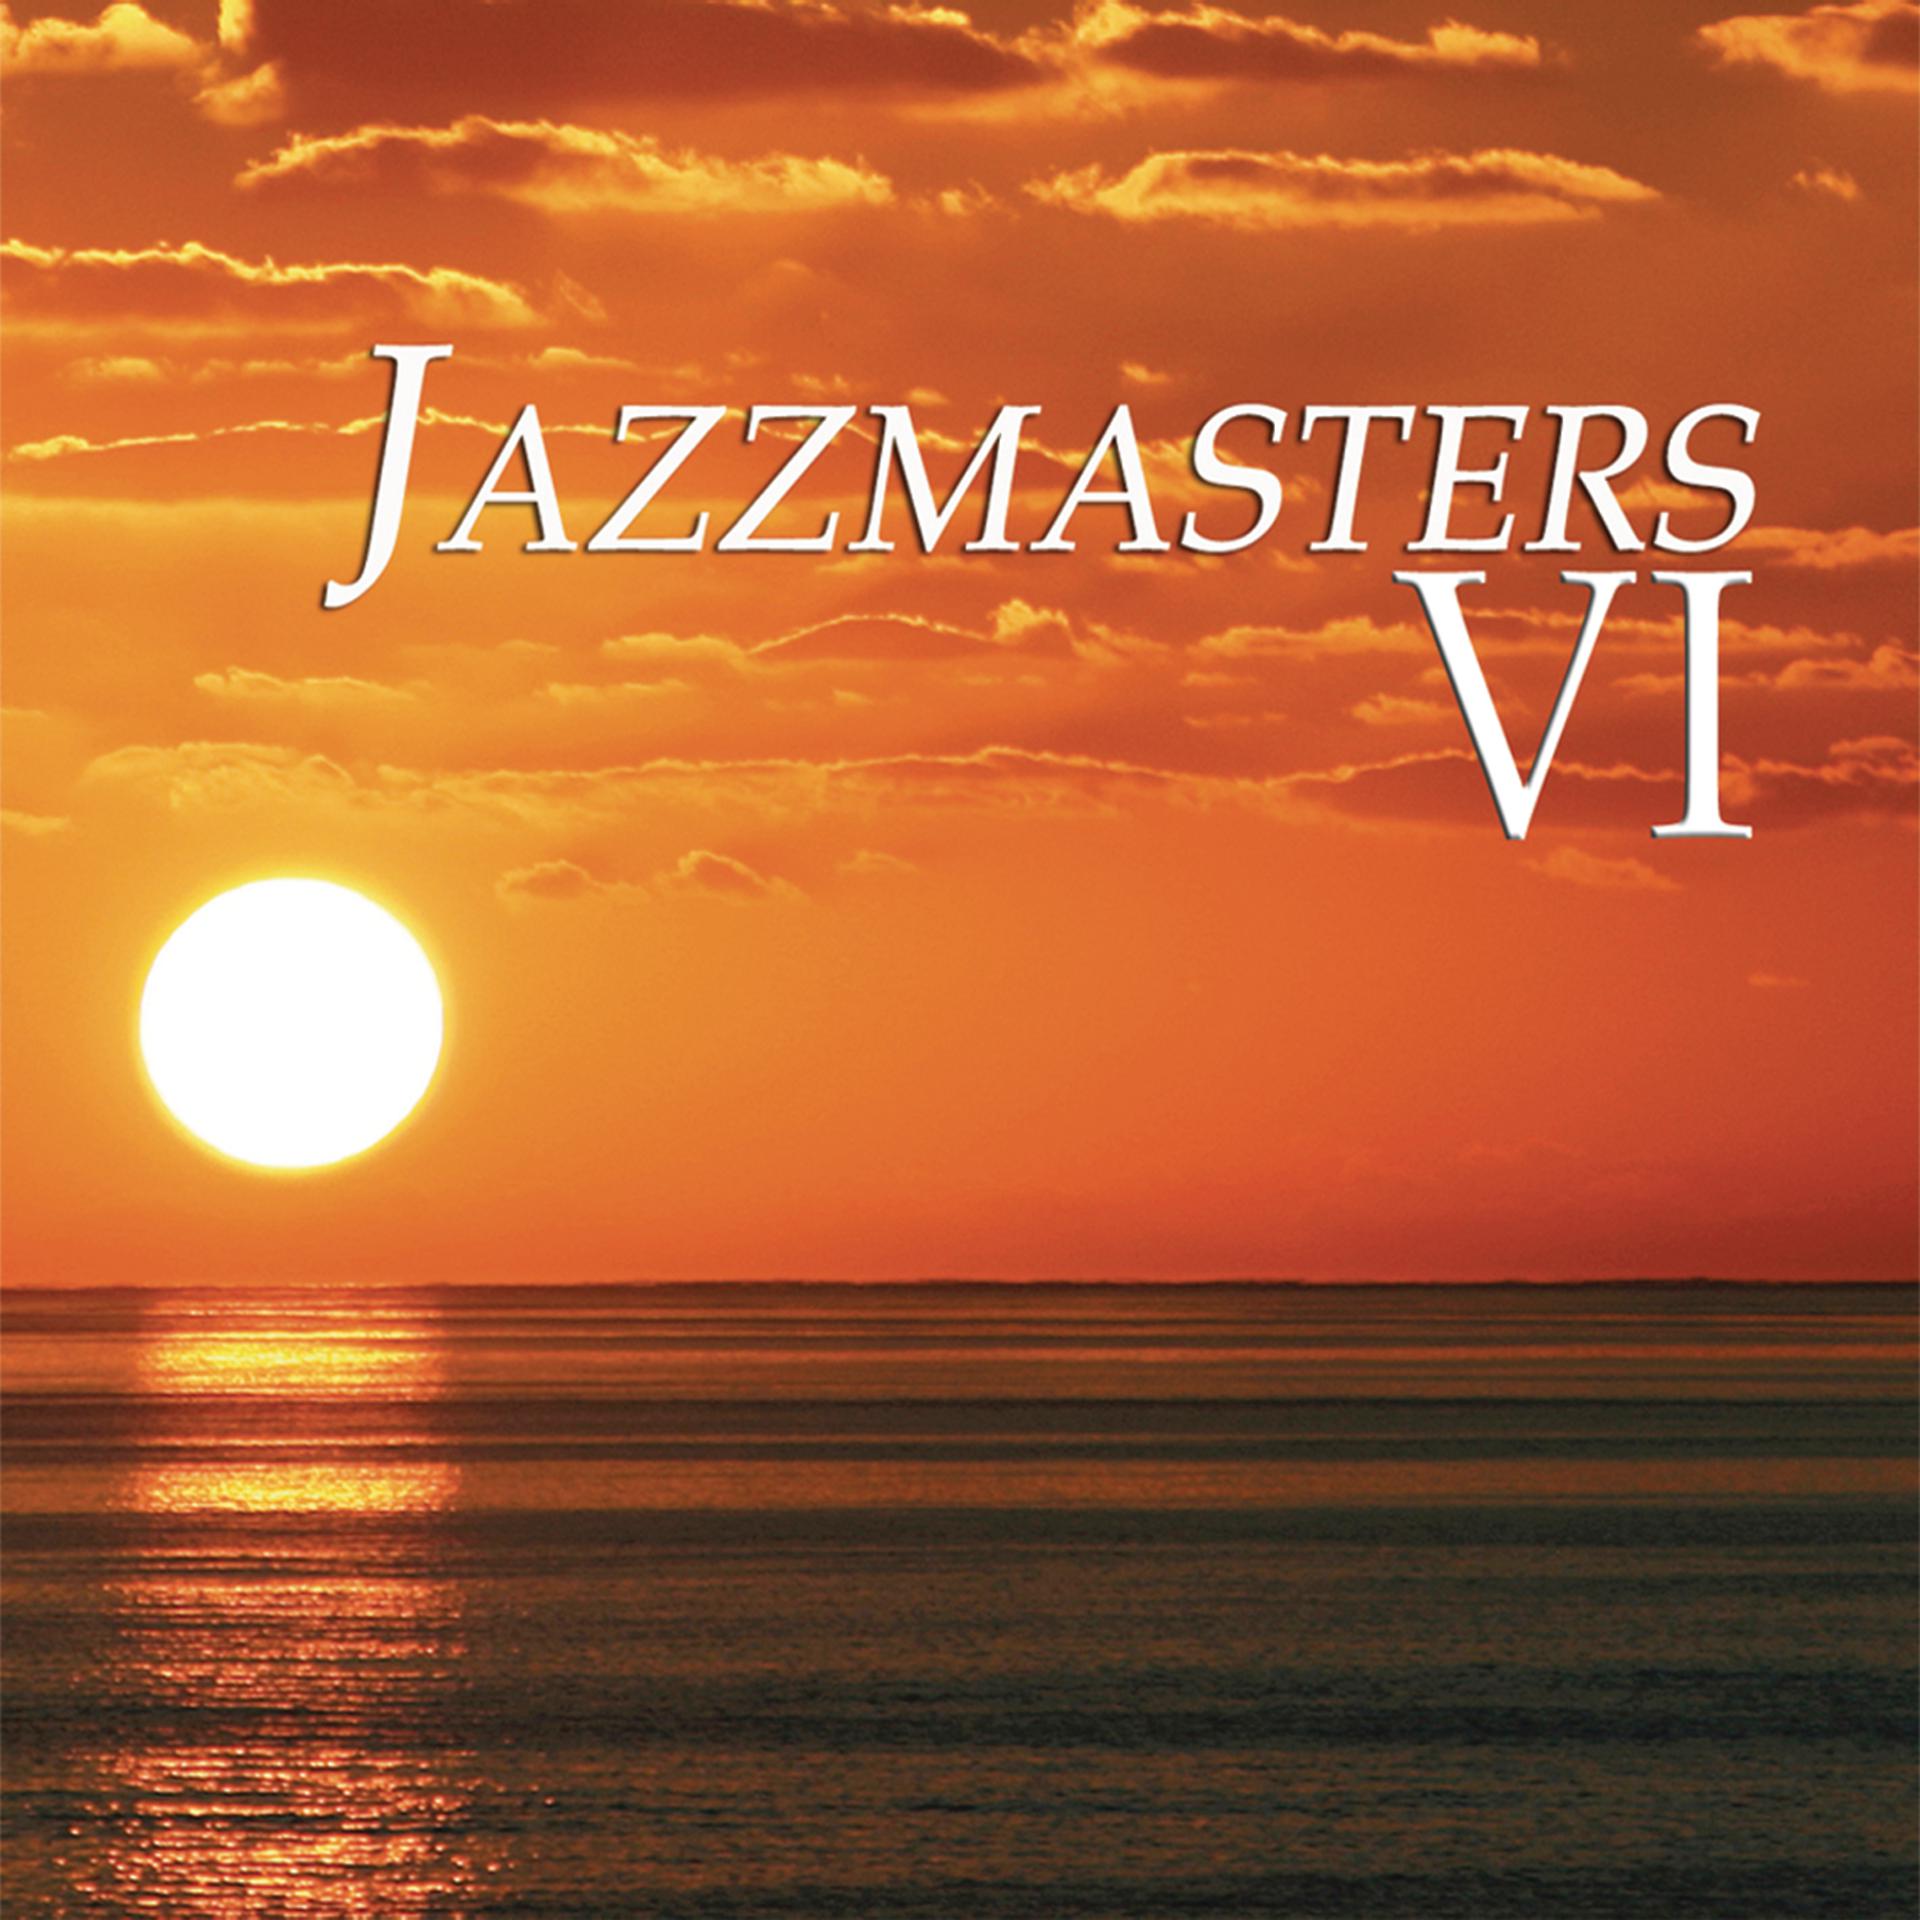 Paul hardcastle. Пауль Хардкастл. Paul Hardcastle Jazzmasters 4. Paul Hardcastle Jazzmasters 5. Paul Hardcastle 1.